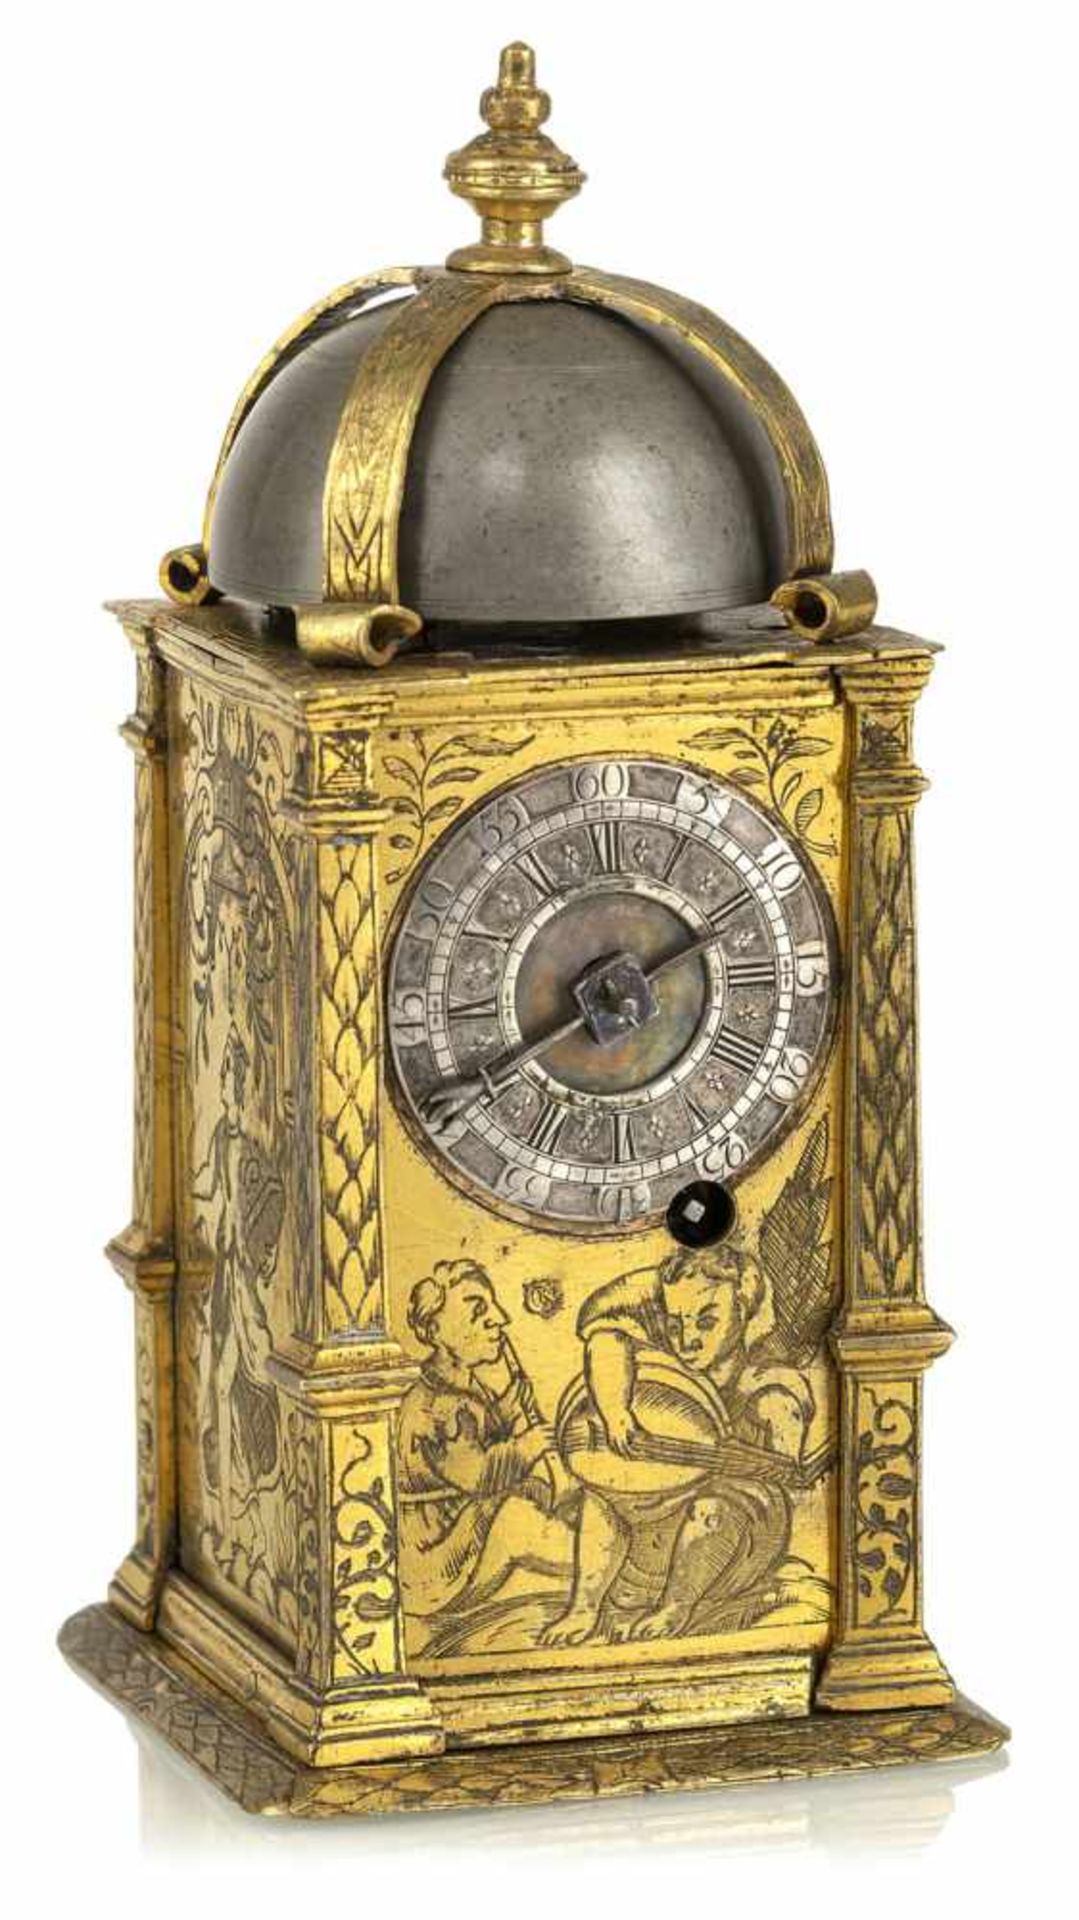 A Renaissance one hand tower clock, marked CK (Conrad Kreizer Augsburg?), c. 1620. Hour striking